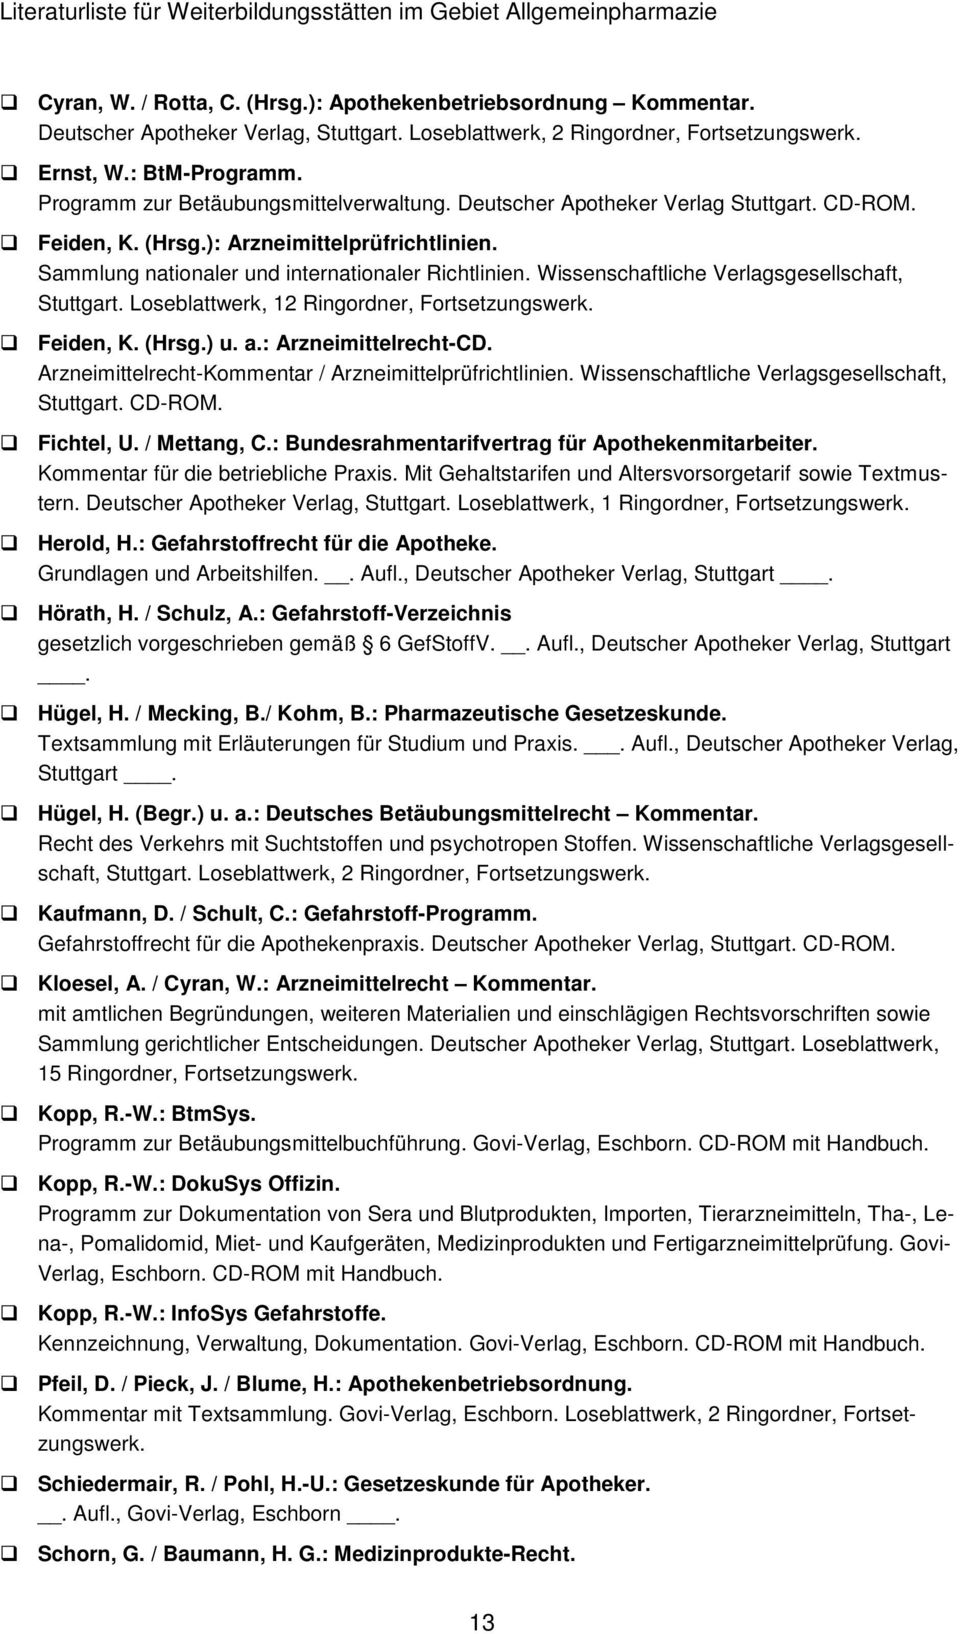 Wissenschaftliche Verlagsgesellschaft, Stuttgart. Loseblattwerk, 12 Ringordner, Fortsetzungswerk. Feiden, K. (Hrsg.) u. a.: Arzneimittelrecht-CD.